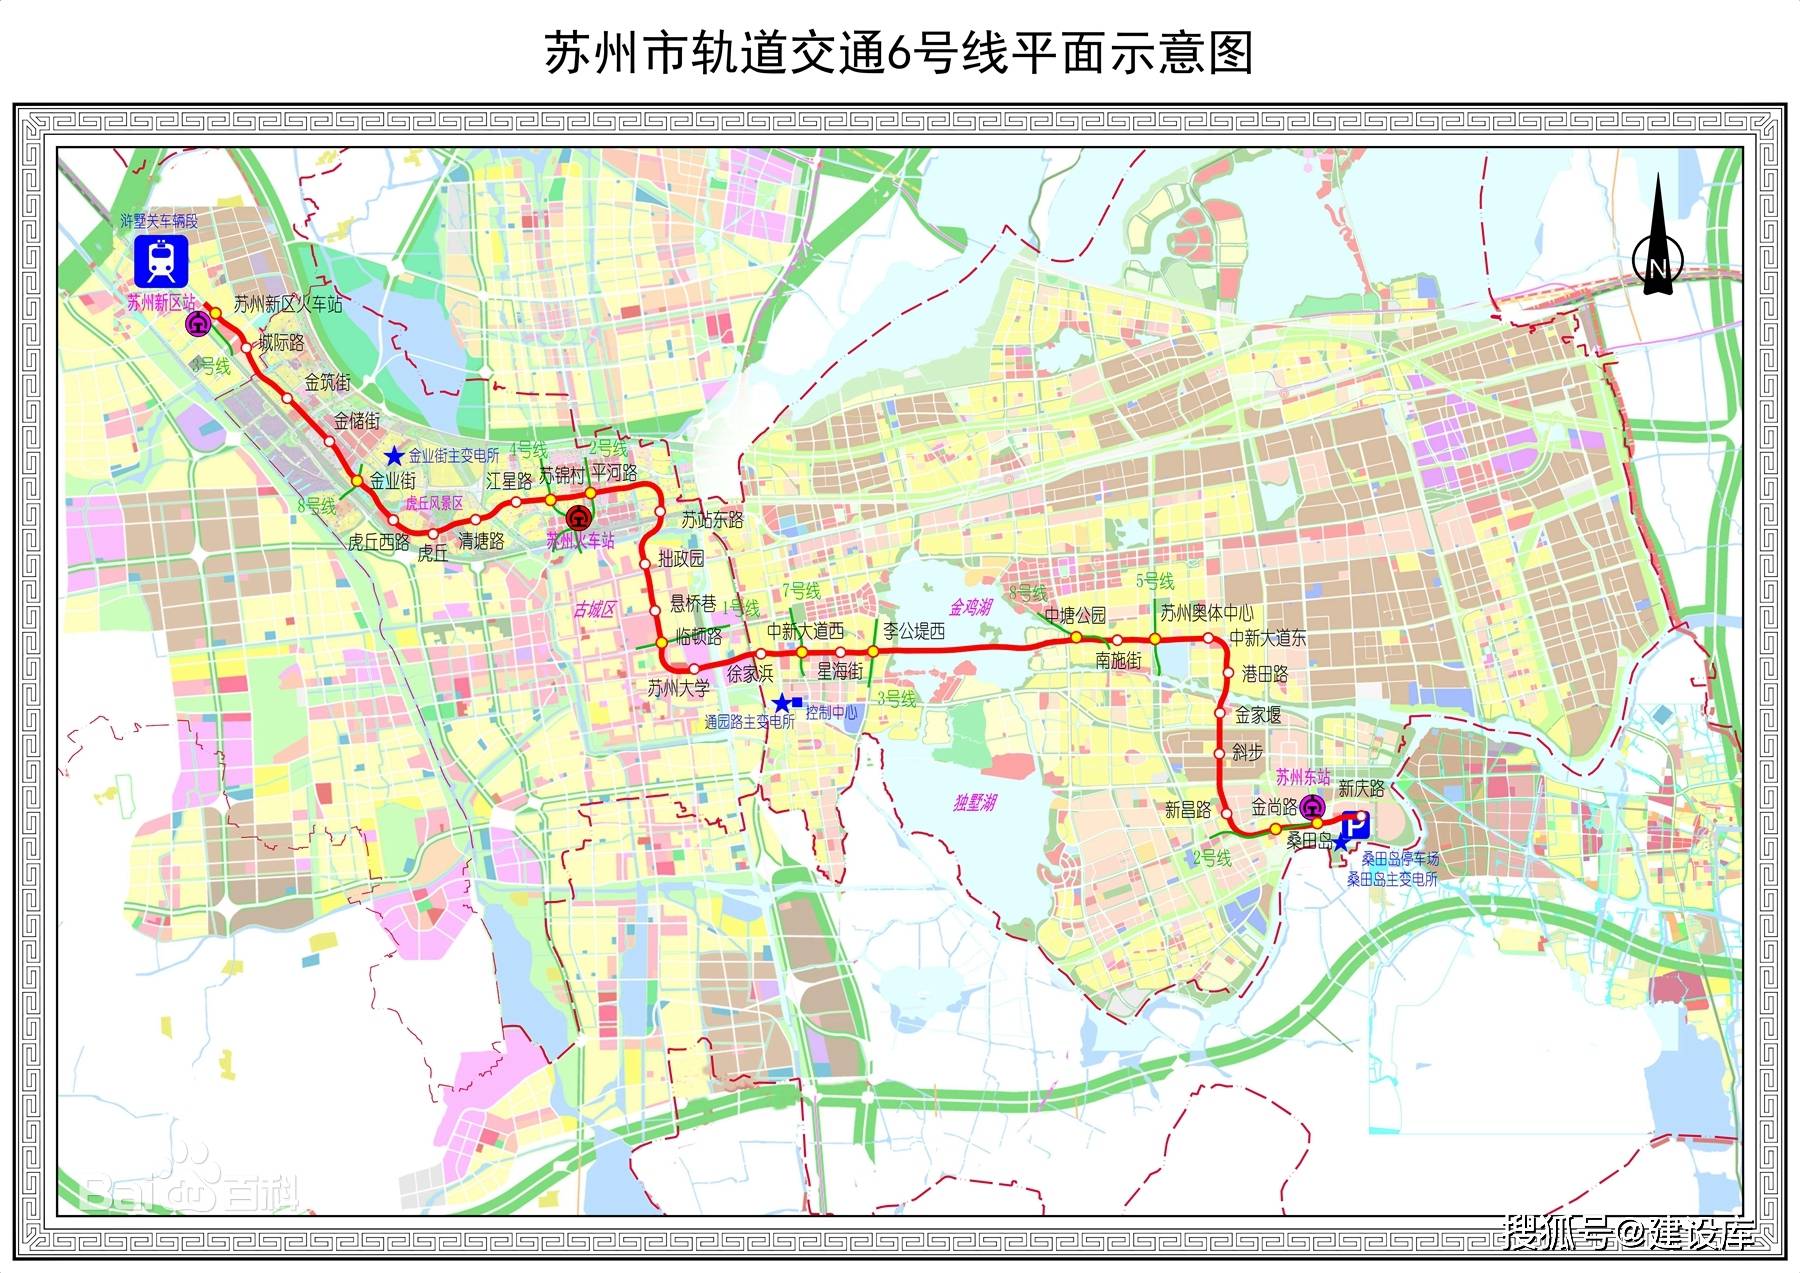 苏州轨道交通6号线是苏州市正在建设的一条地铁线路,预计于2024年6月